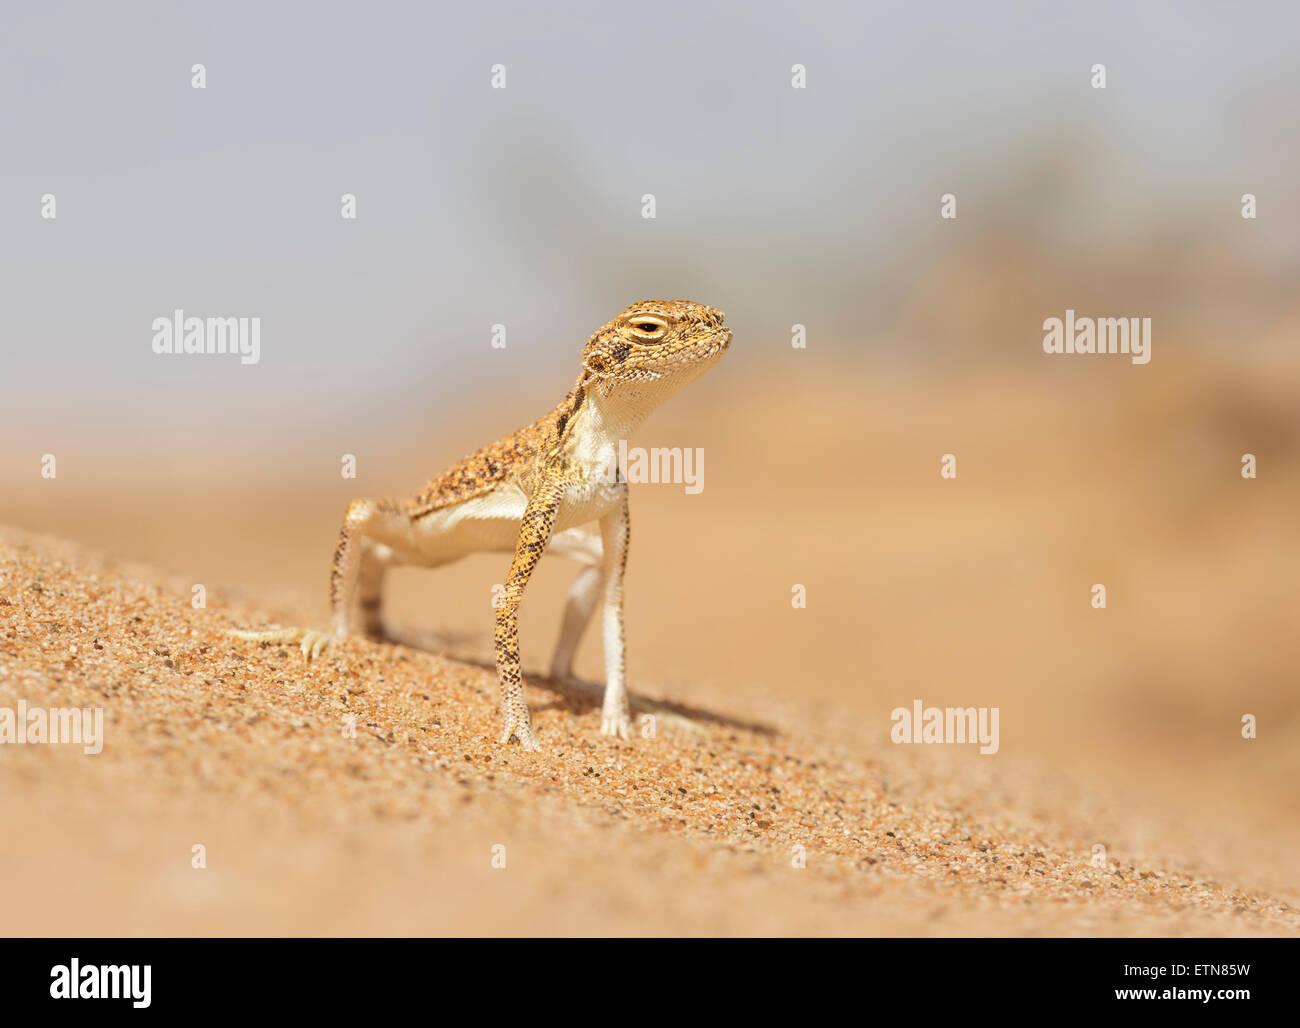 Arabian toad-headed agama (Phrynocephalus arabicus), Sharjah, UAE Stock Photo